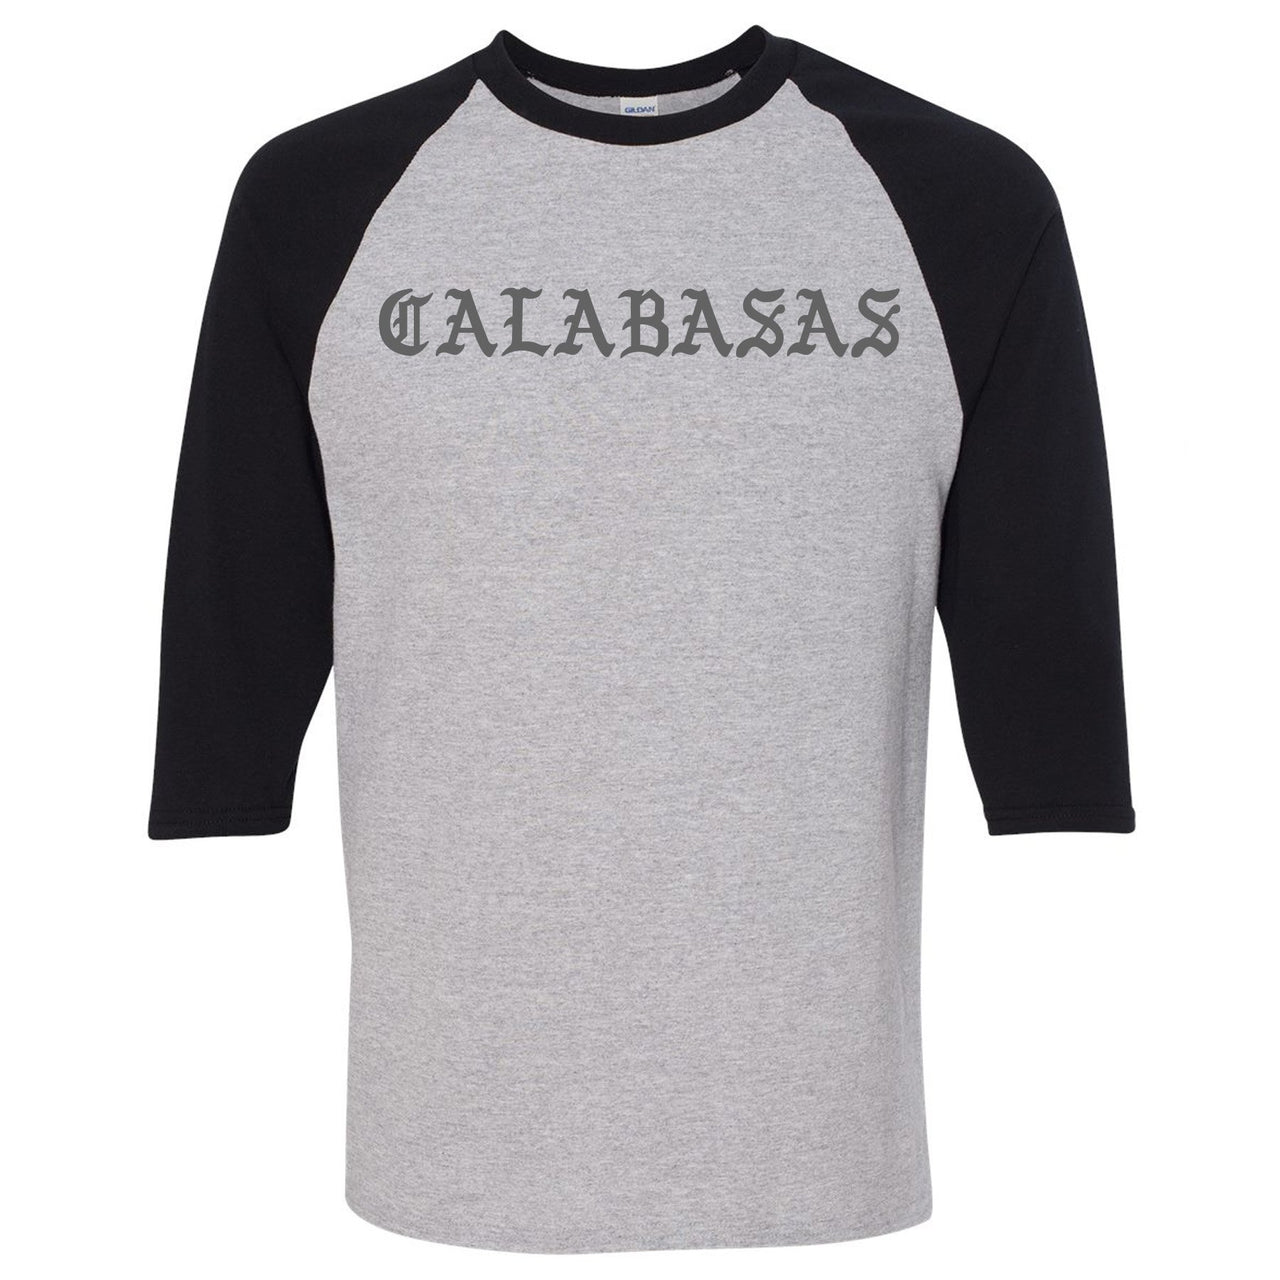 Vanta v2 700s Raglan T Shirt | Calabasas, Sports Gray and Black